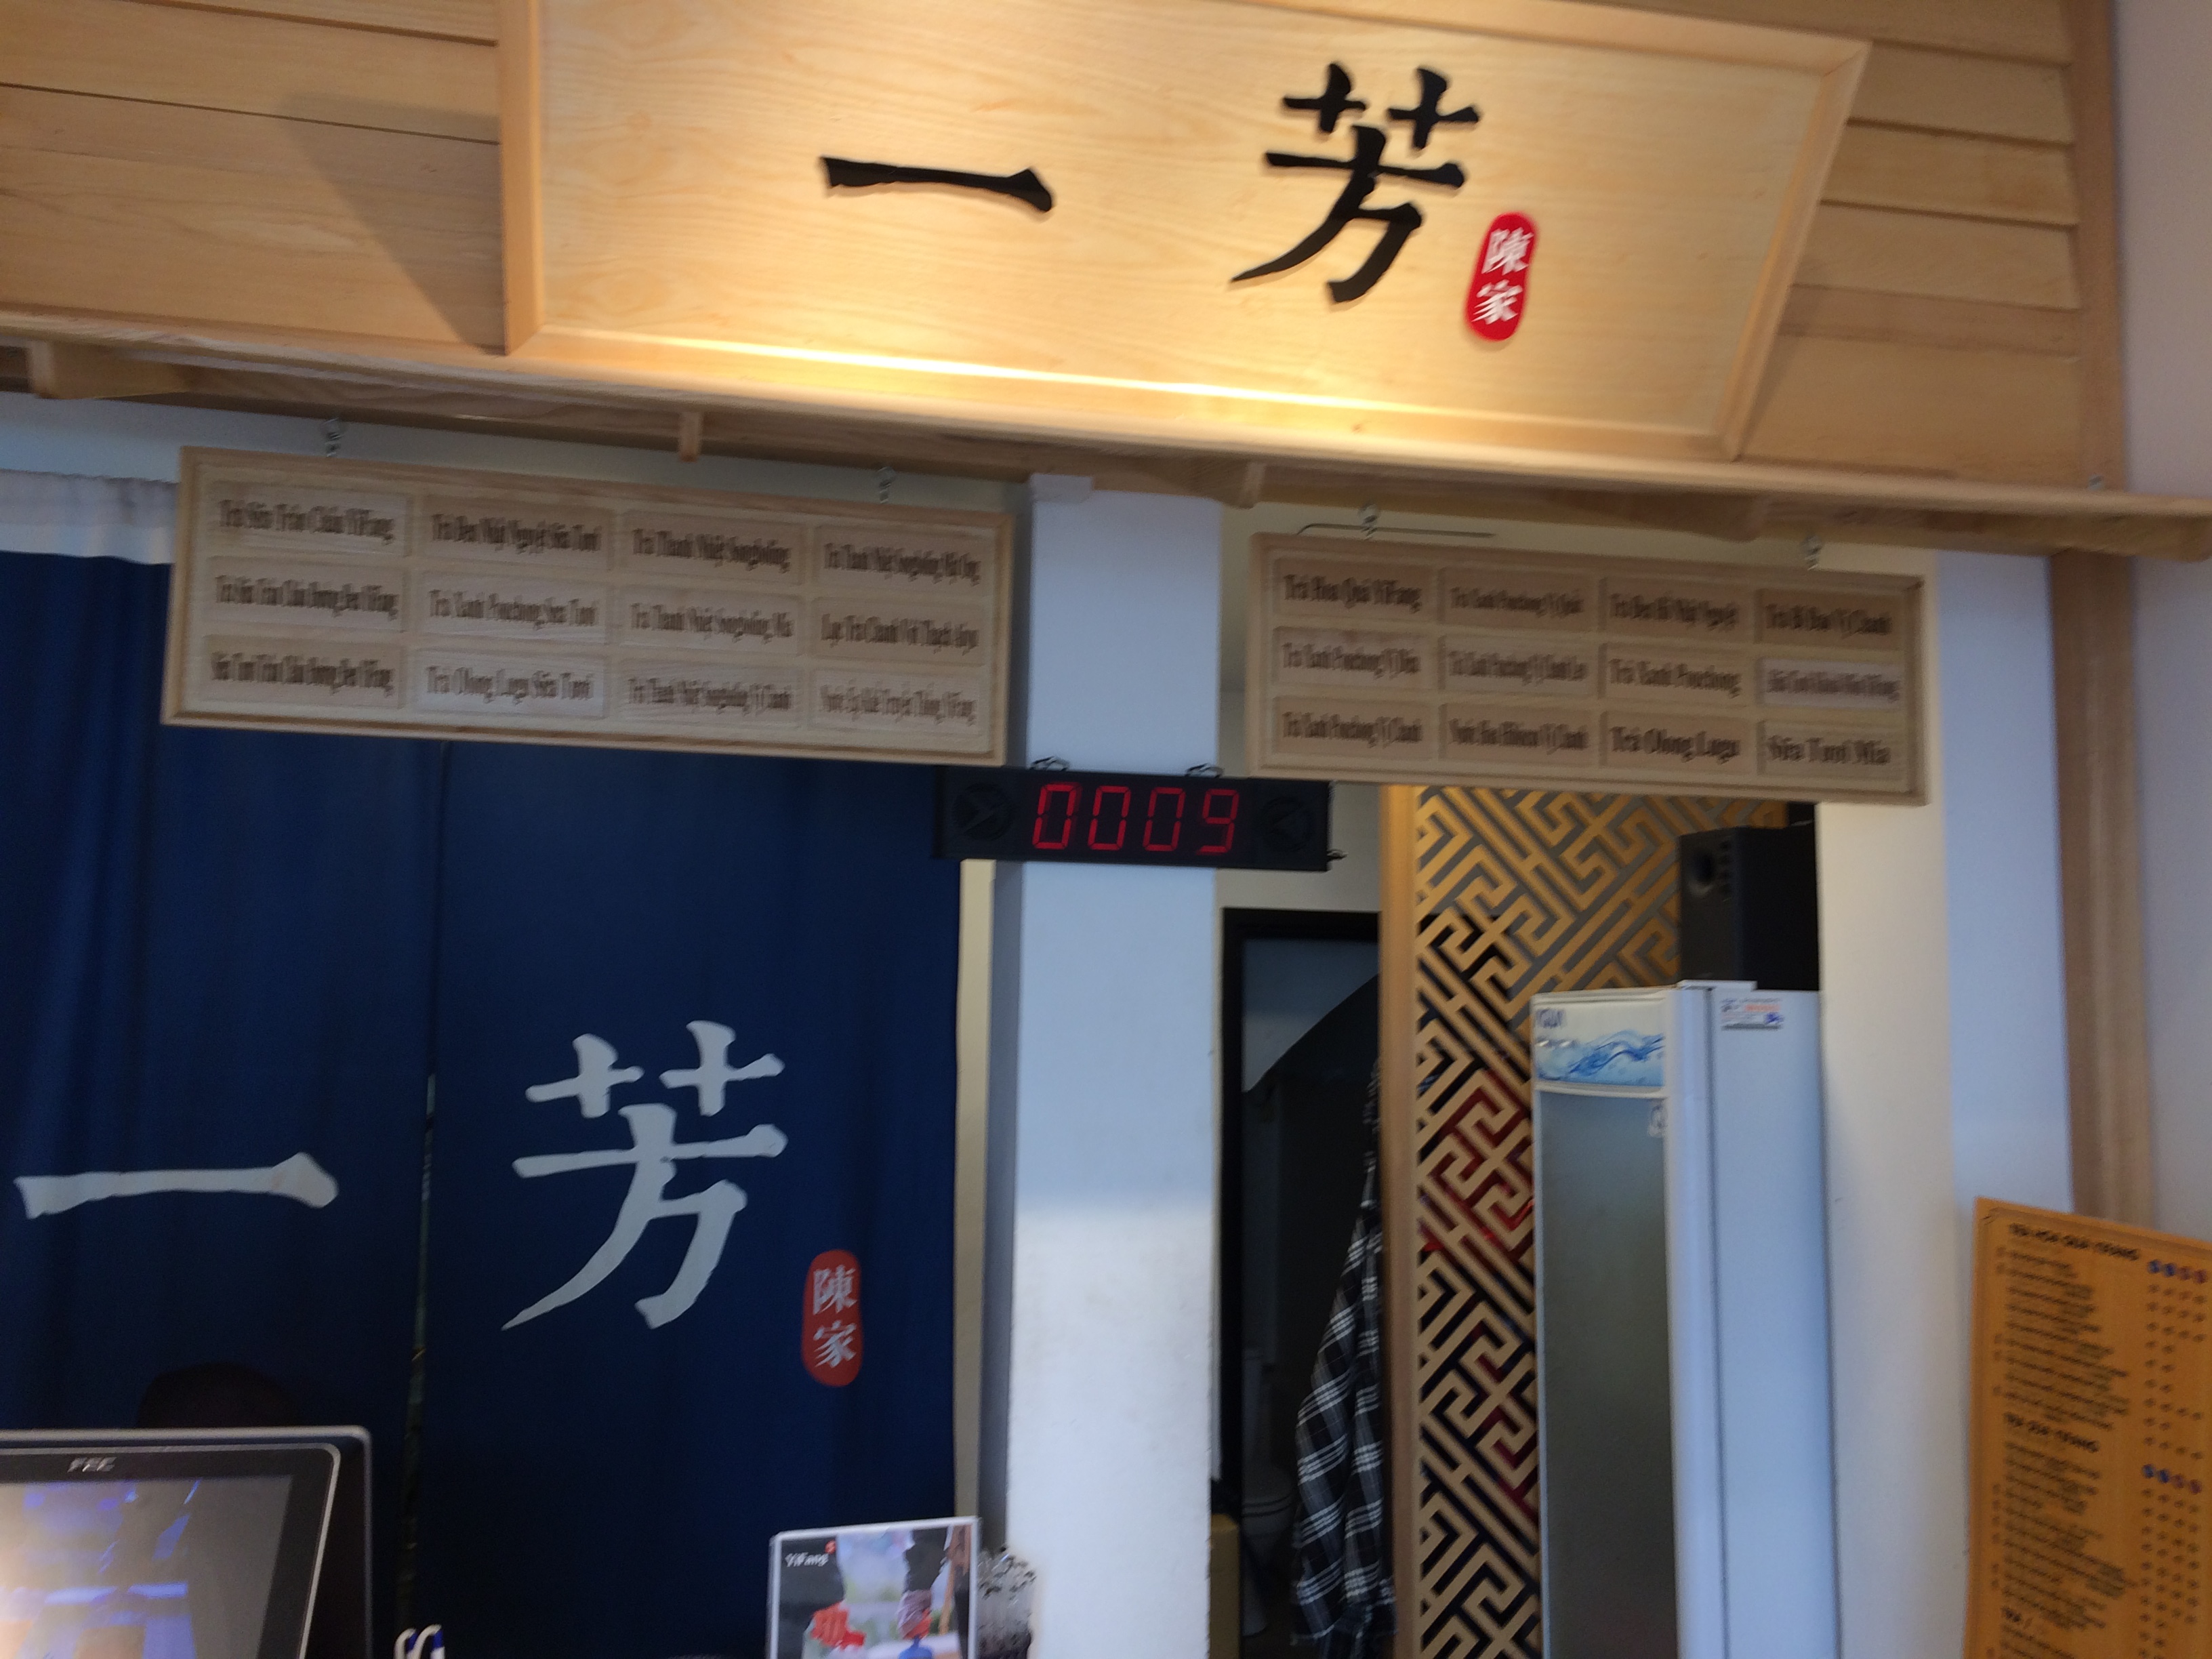 Quickbell cung cấp thiết bị báo rung lấy đồ uống cho quán trà sữa Yi Fang số 11 đường Thanh Niên